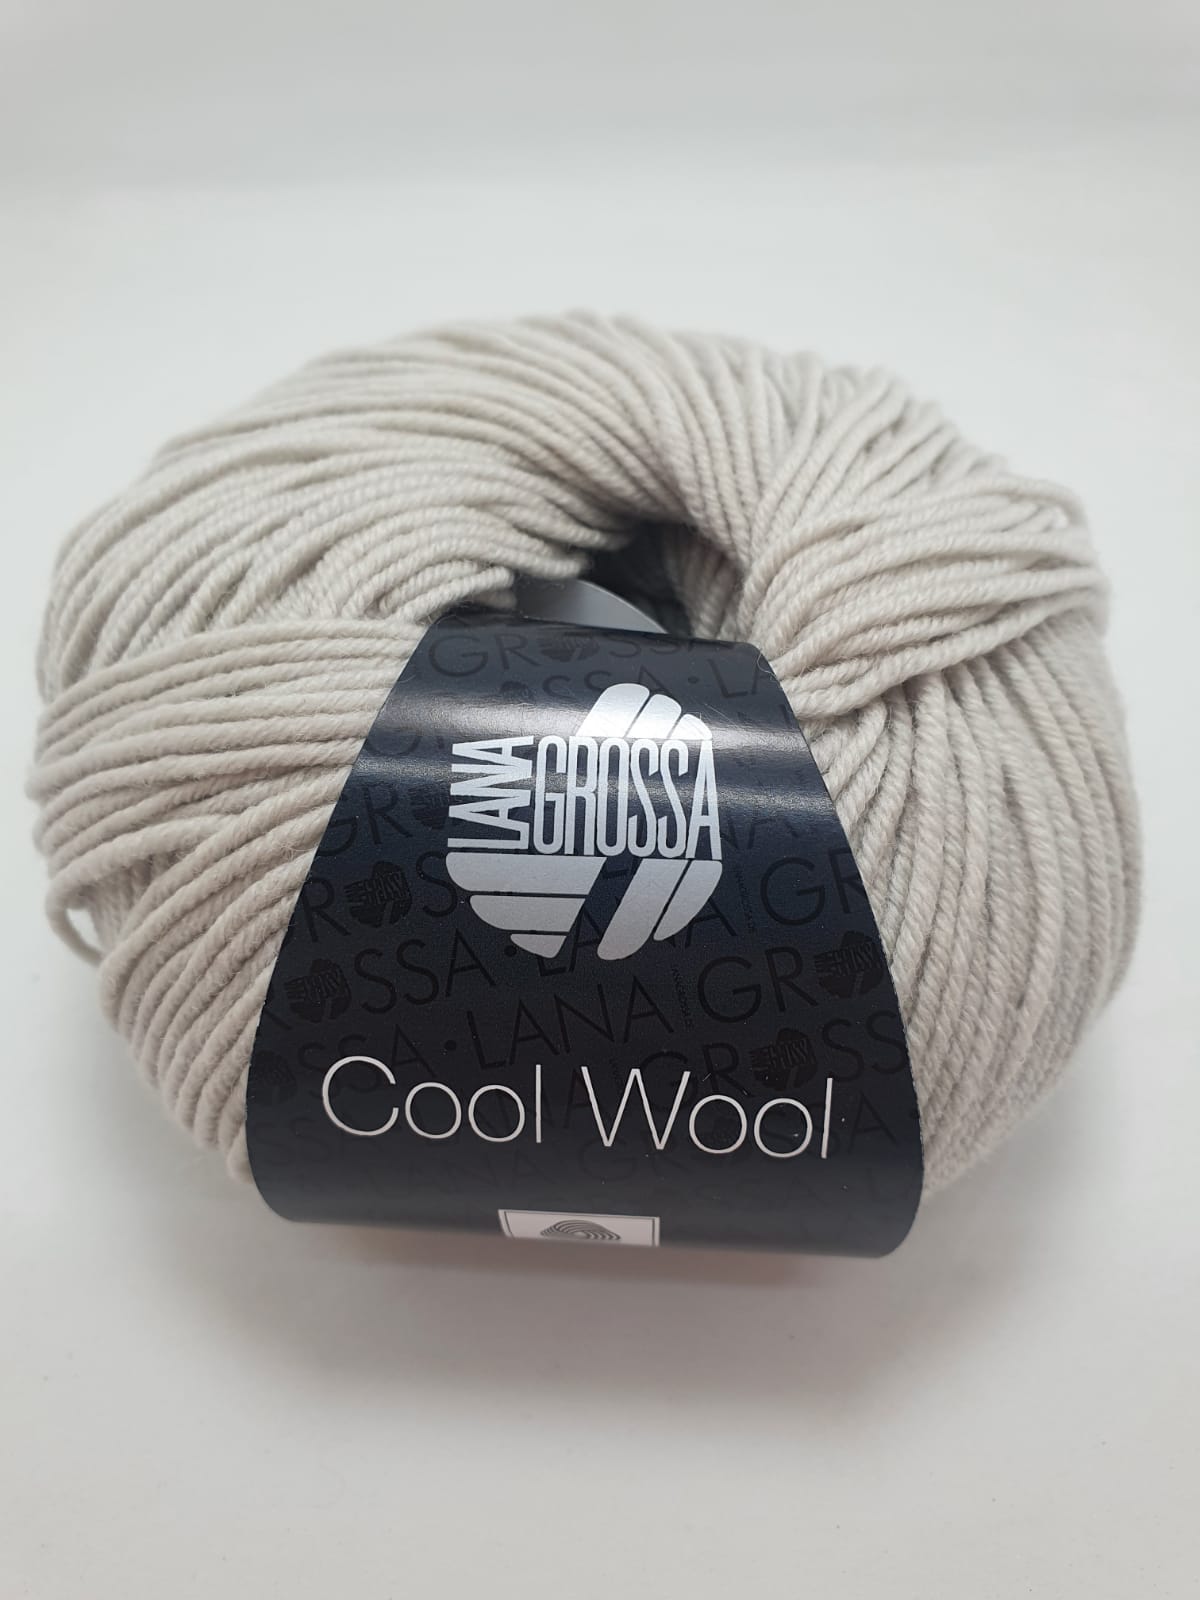 Lana Grossa Cool Wool kleur 2076